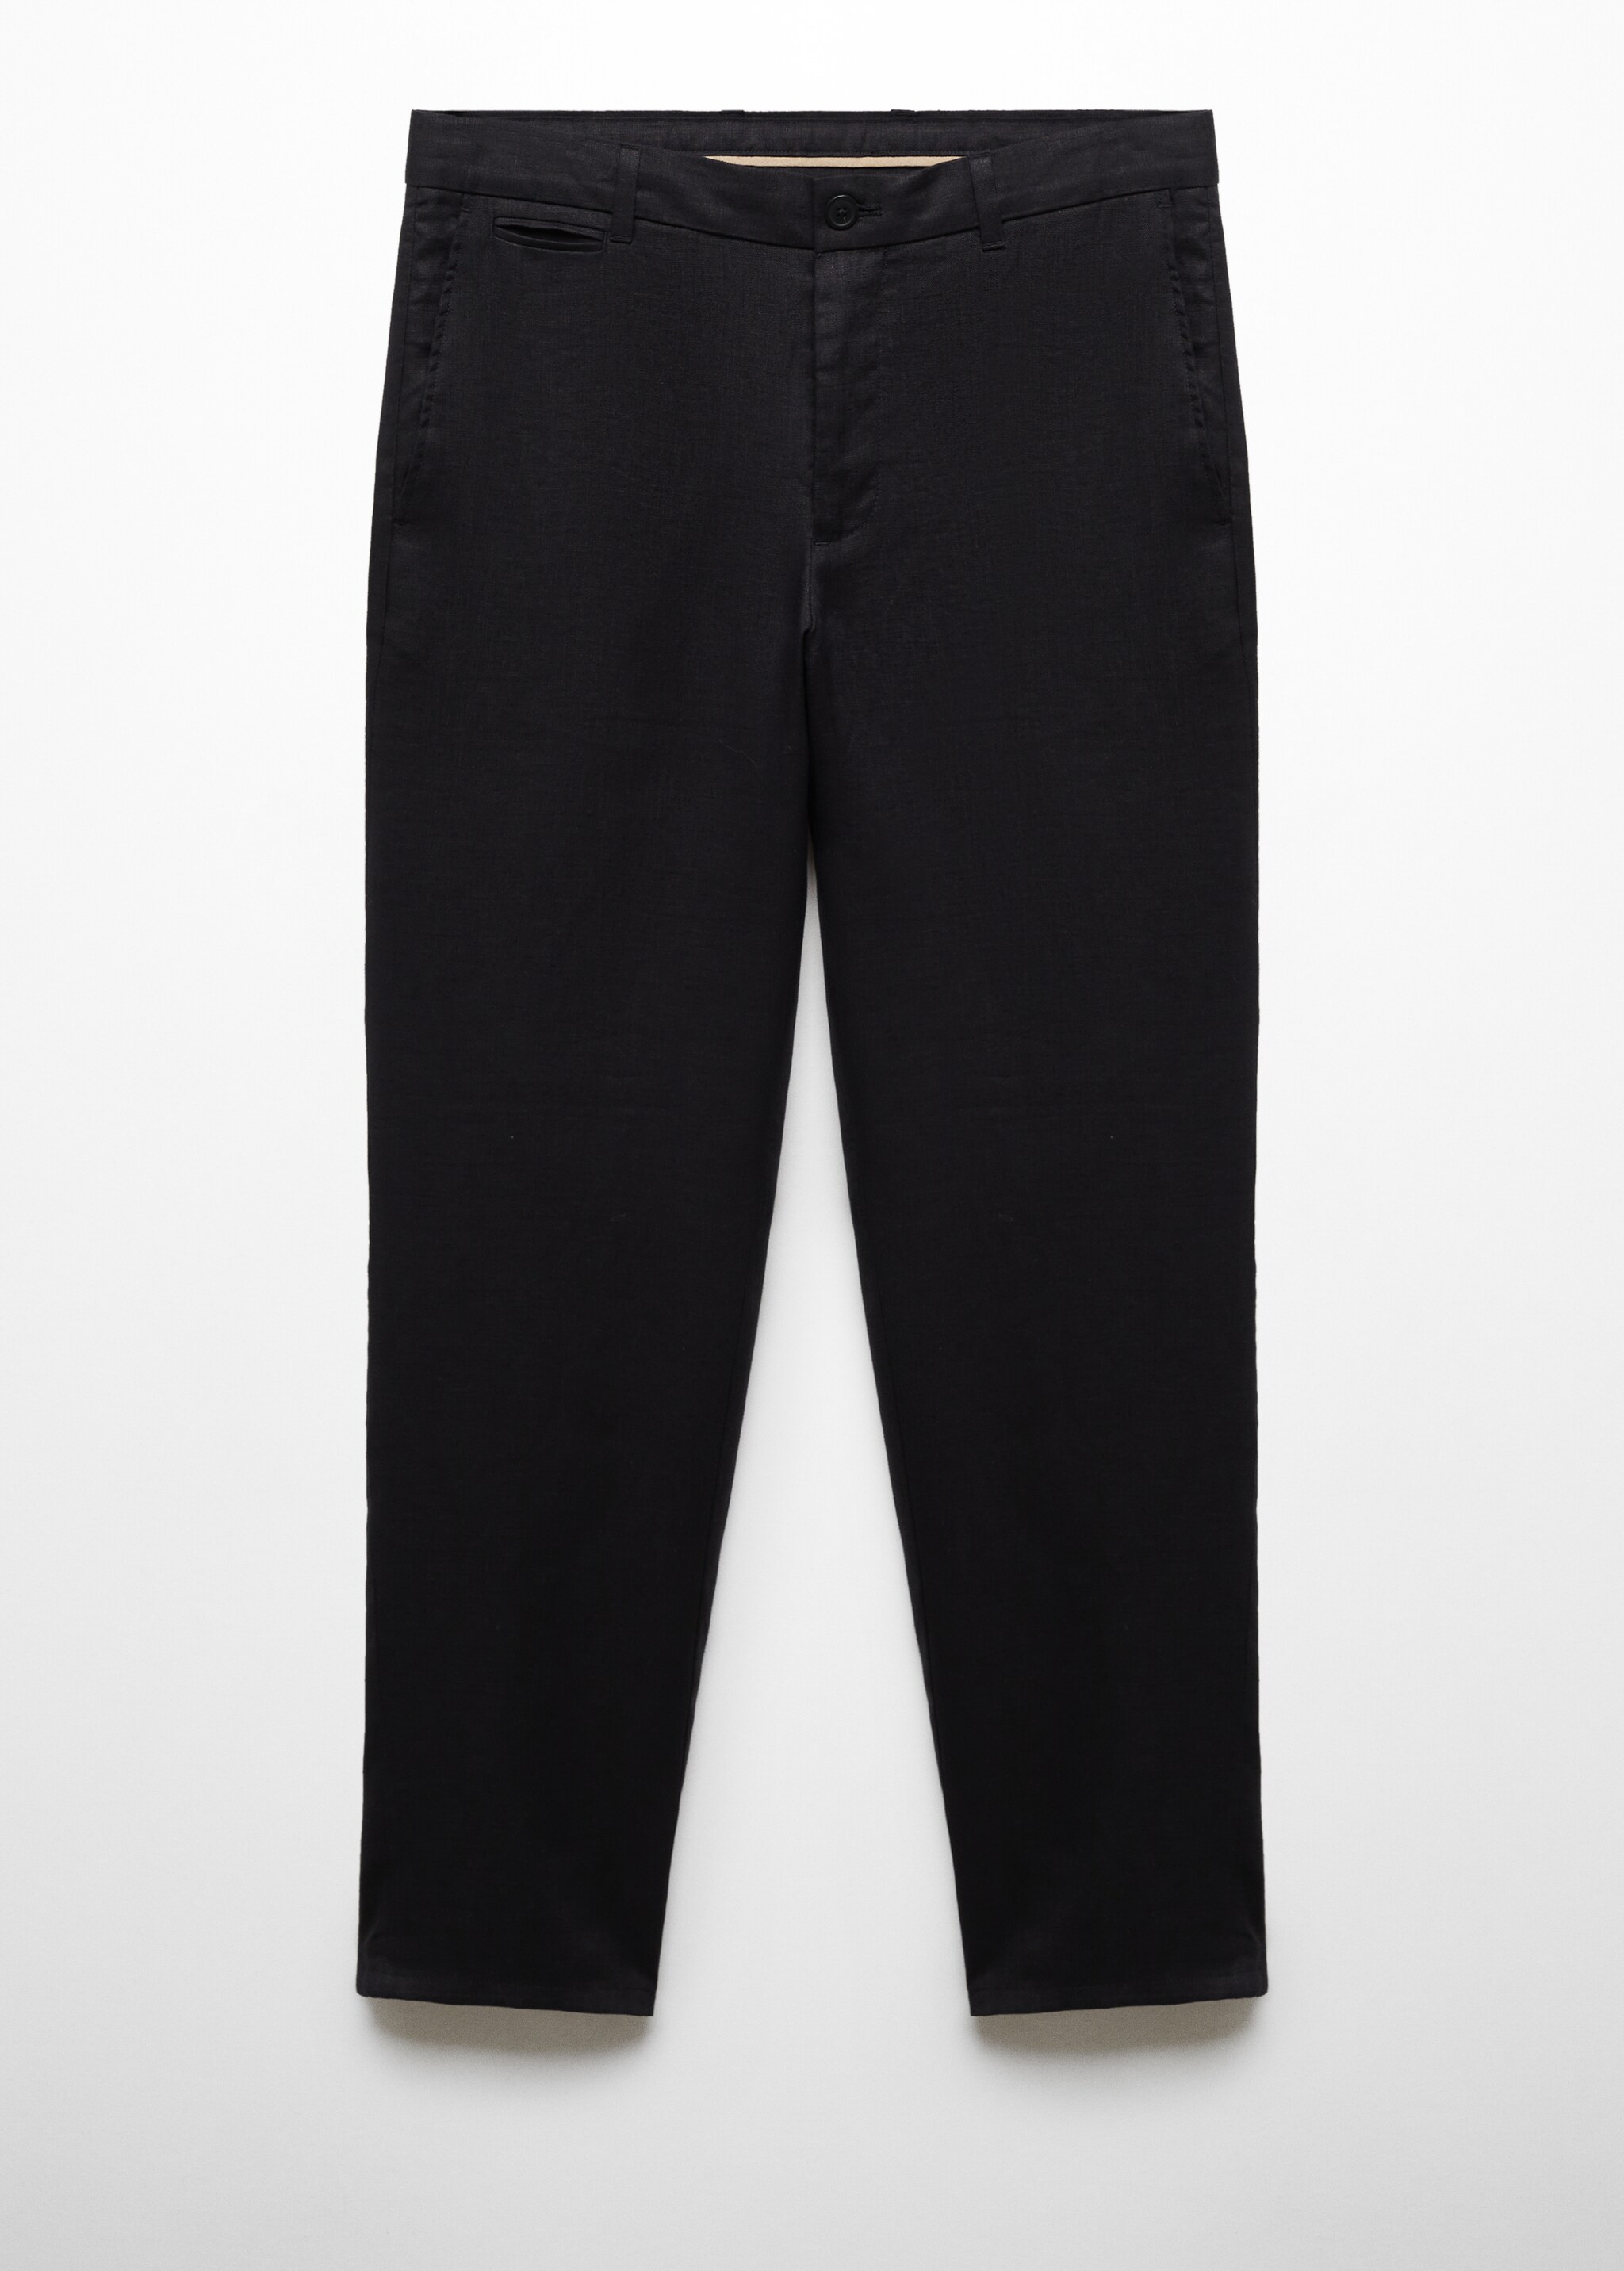 Pantalón 100% lino slim fit - Artículo sin modelo